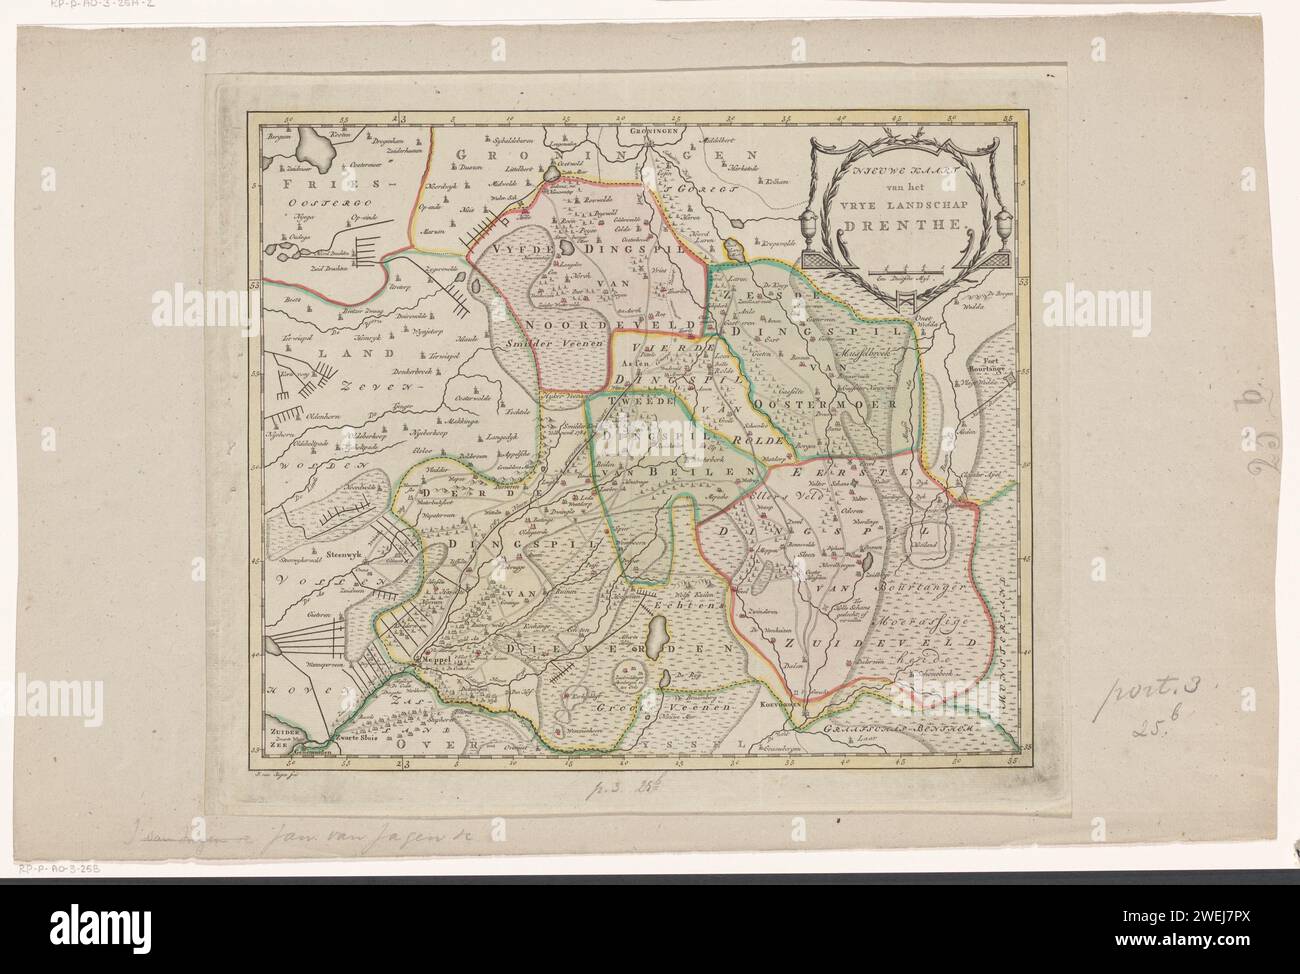 Mappa di Drenthe, Jan van Jagen, 1795 stampato in alto a destra con titolo e ciotola: Un Myl tedesco. Distribuzione in gradi lungo i bordi. Mappe cartacee per incisioni di paesi o regioni diversi Drenthe Foto Stock